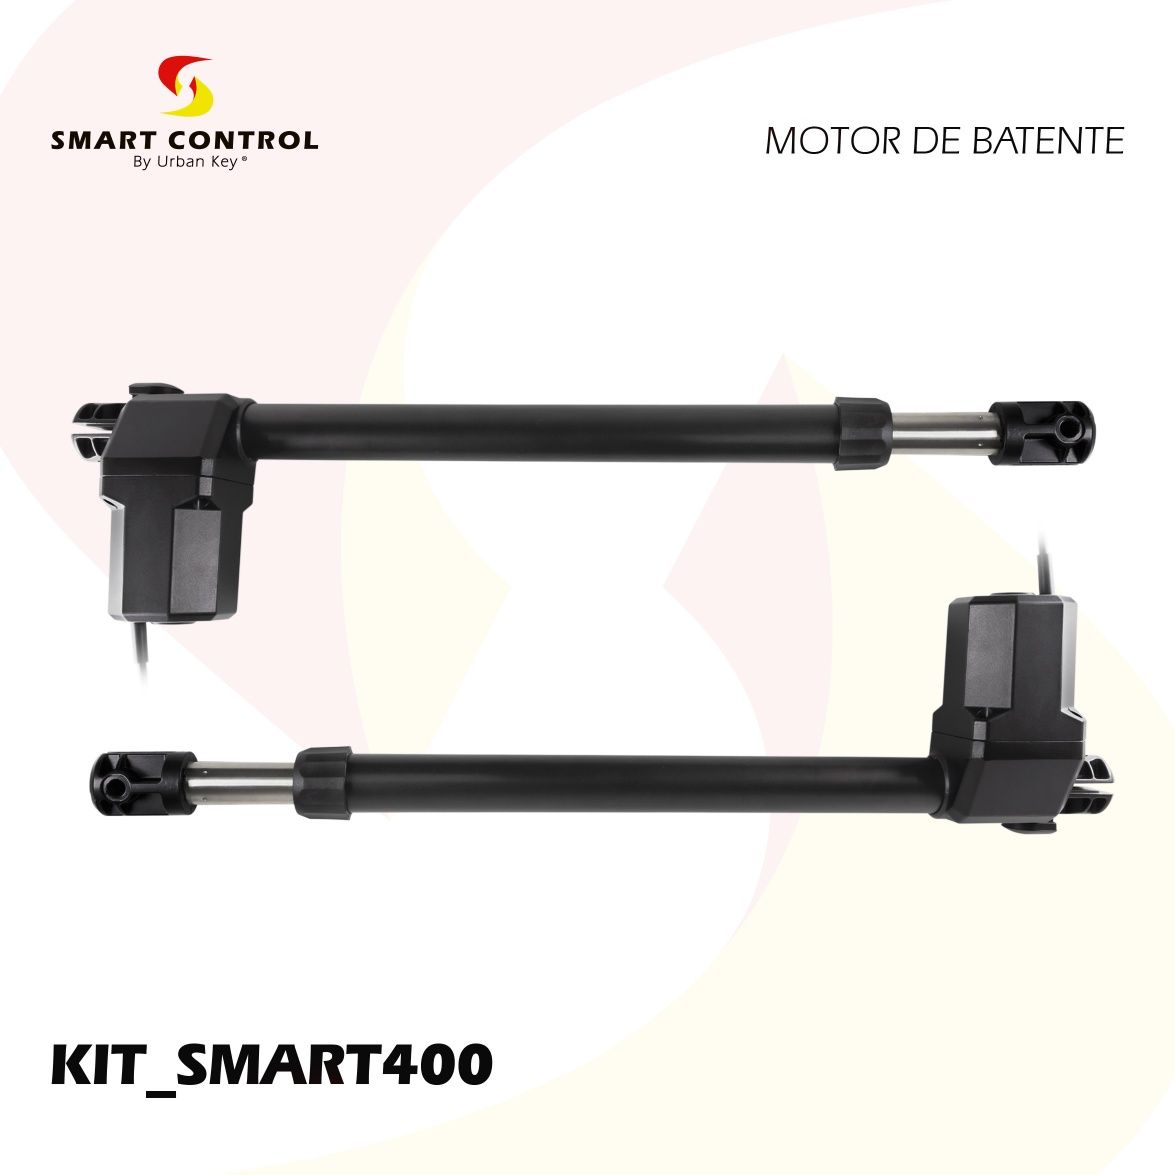 Kit SMART 400 para portões de batente